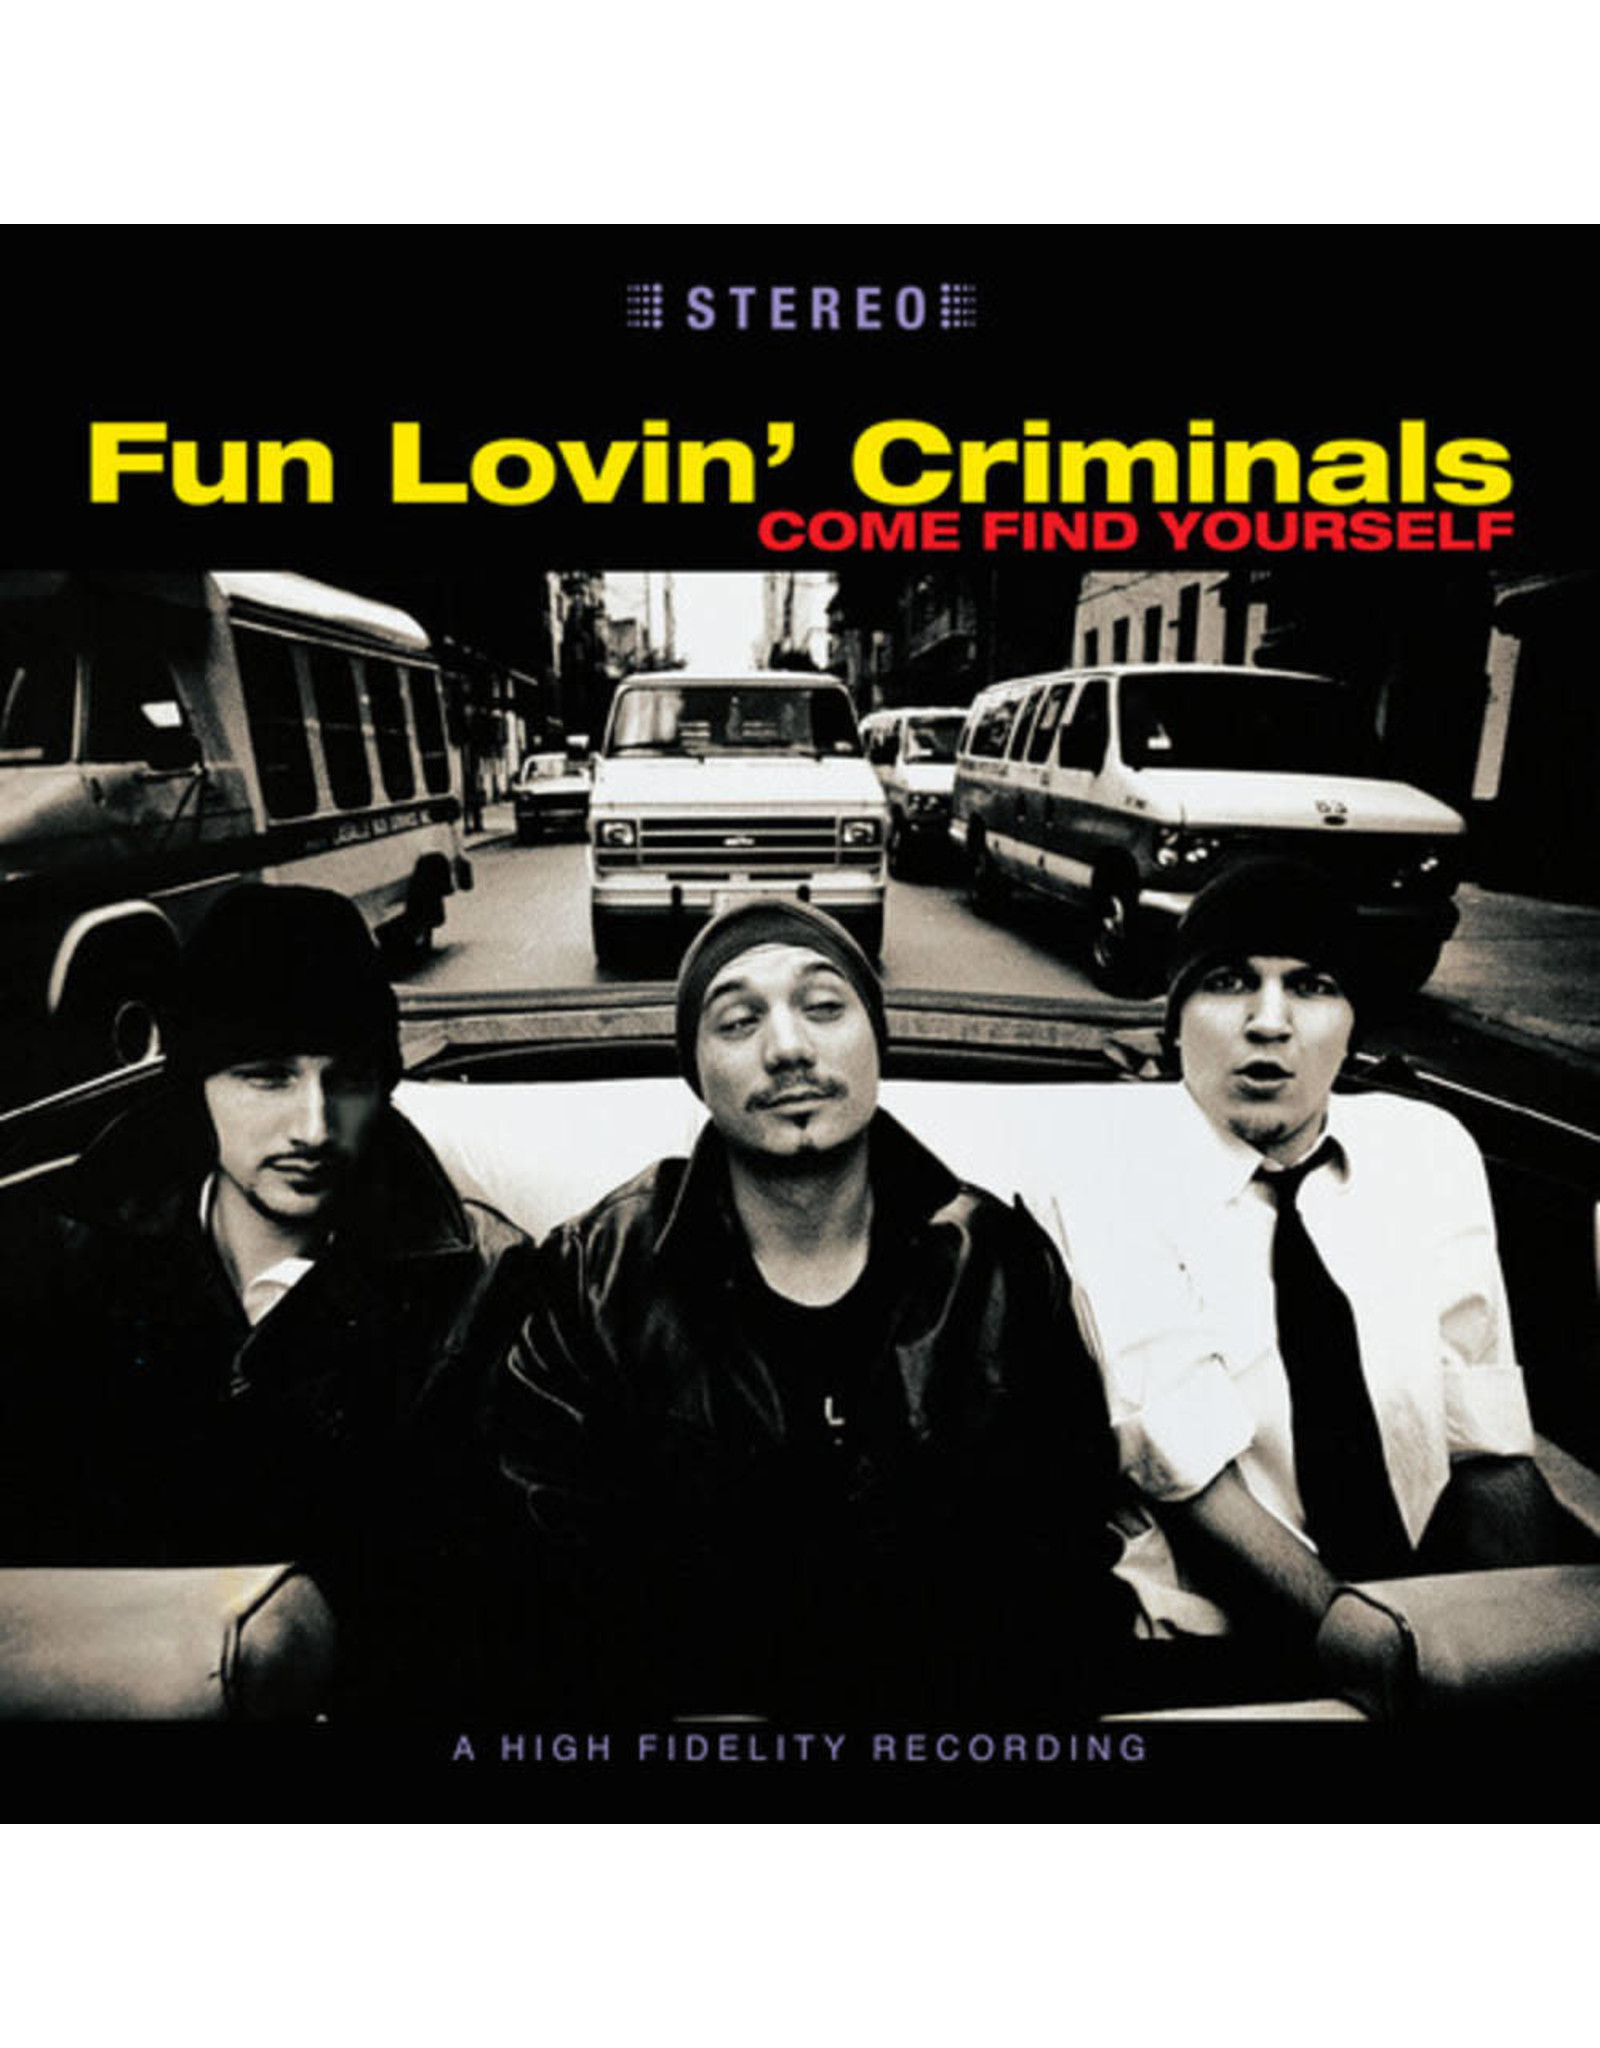 Fun Lovin' Criminals - Come Find Yourself (2LP/Colored/180g/Bonus tracks) 25th anniversary edition